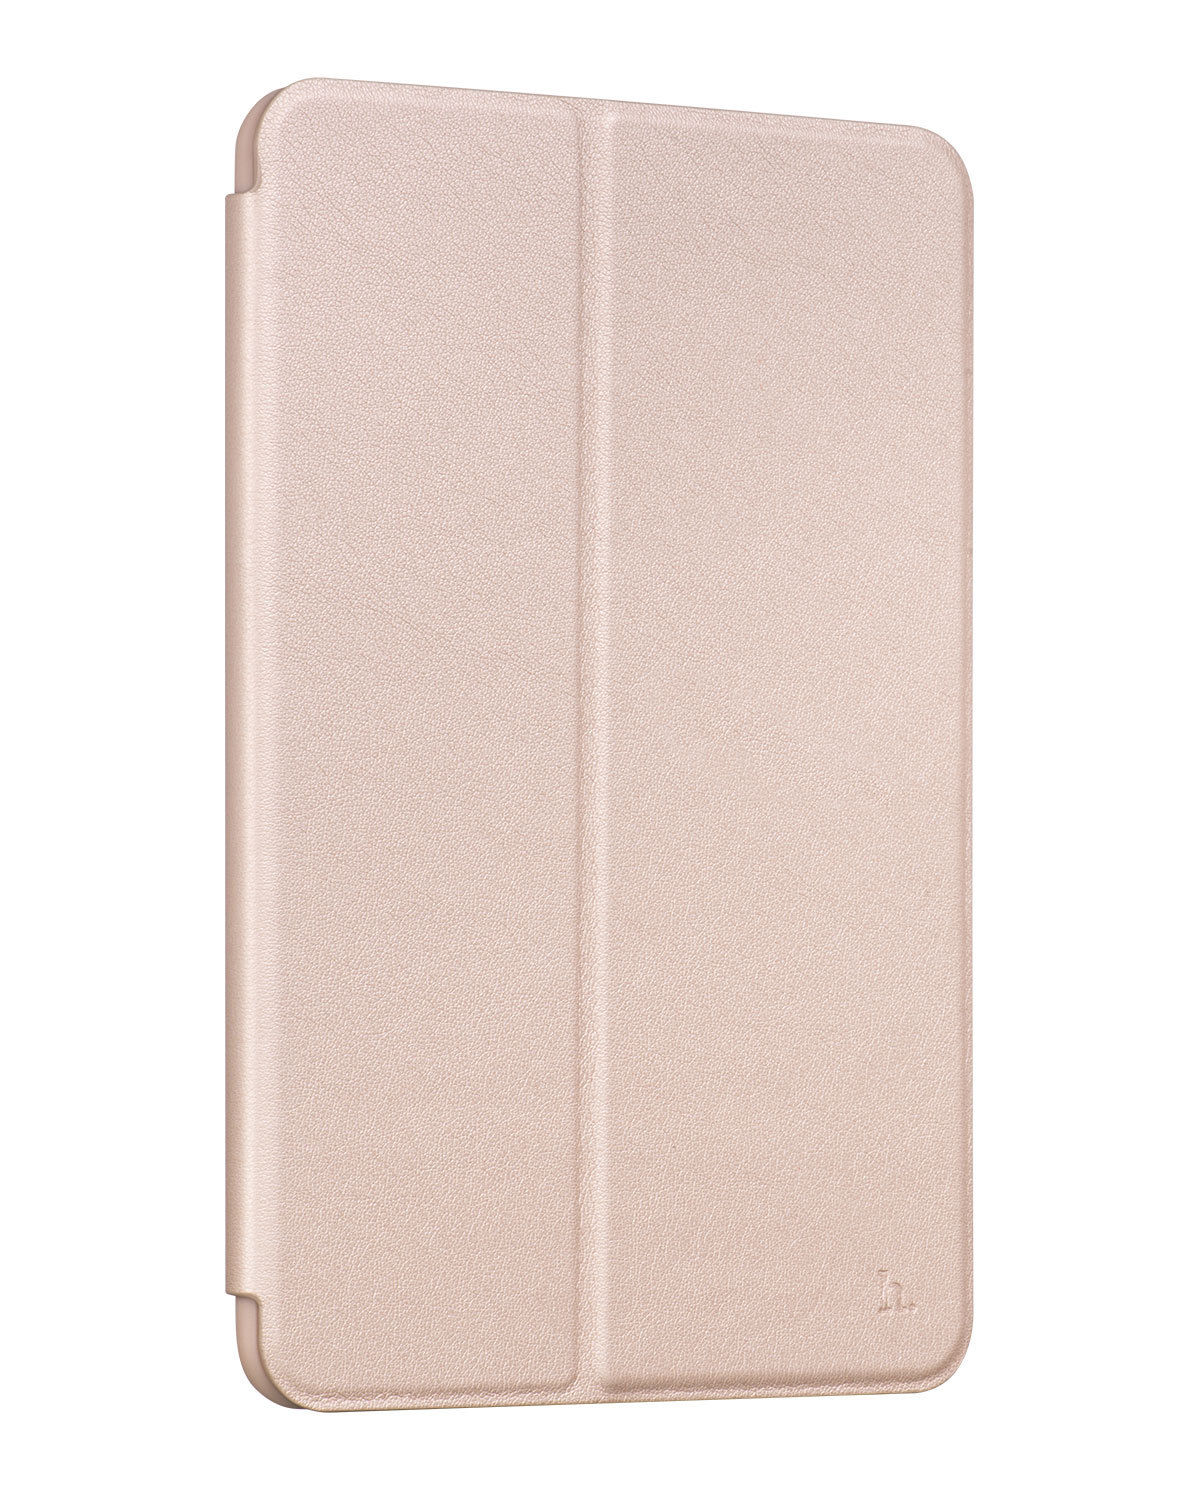  Bao Da iPad Pro Hiệu Hoco Ultra Thin là sản phẩm được nhập khẩu từ Hongkong làm bằng  chất liệu da trơn cao cấp rất sang trọng, bên trong là 1 lớp vải siêu mịn bảo vệ cho máy không bị trầy xước.